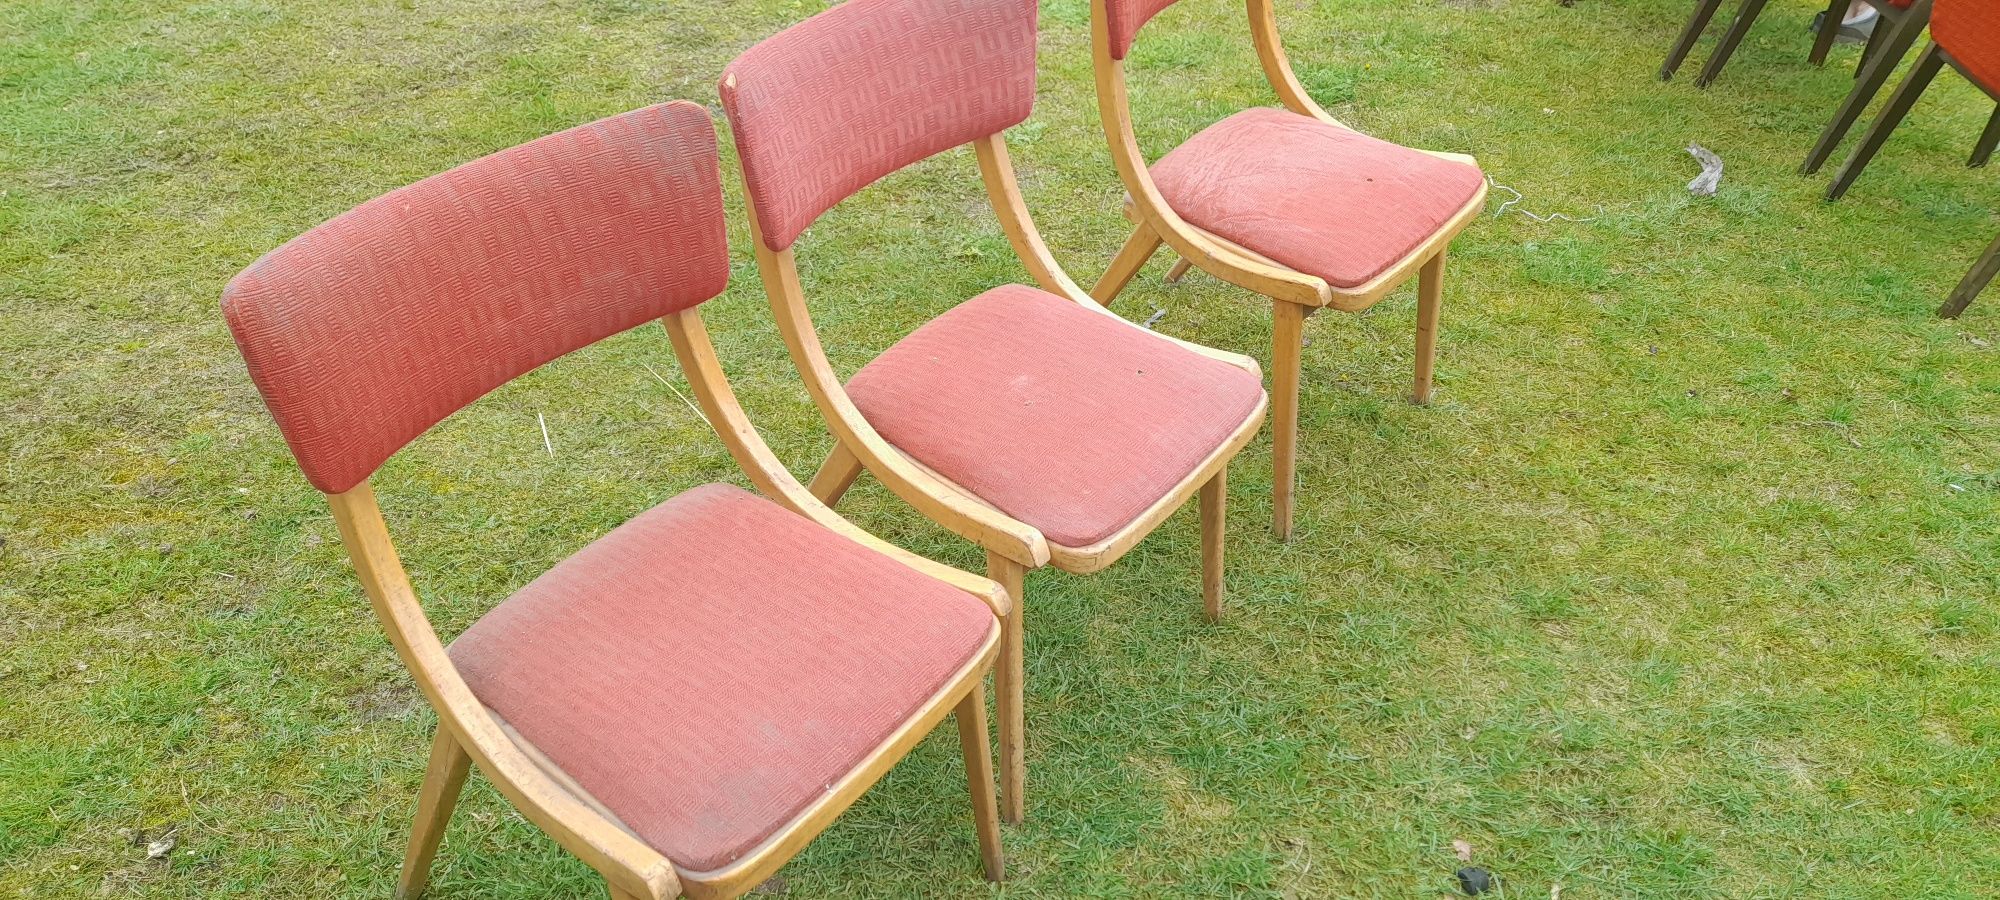 Krzesła skoczek prl Aga fotele